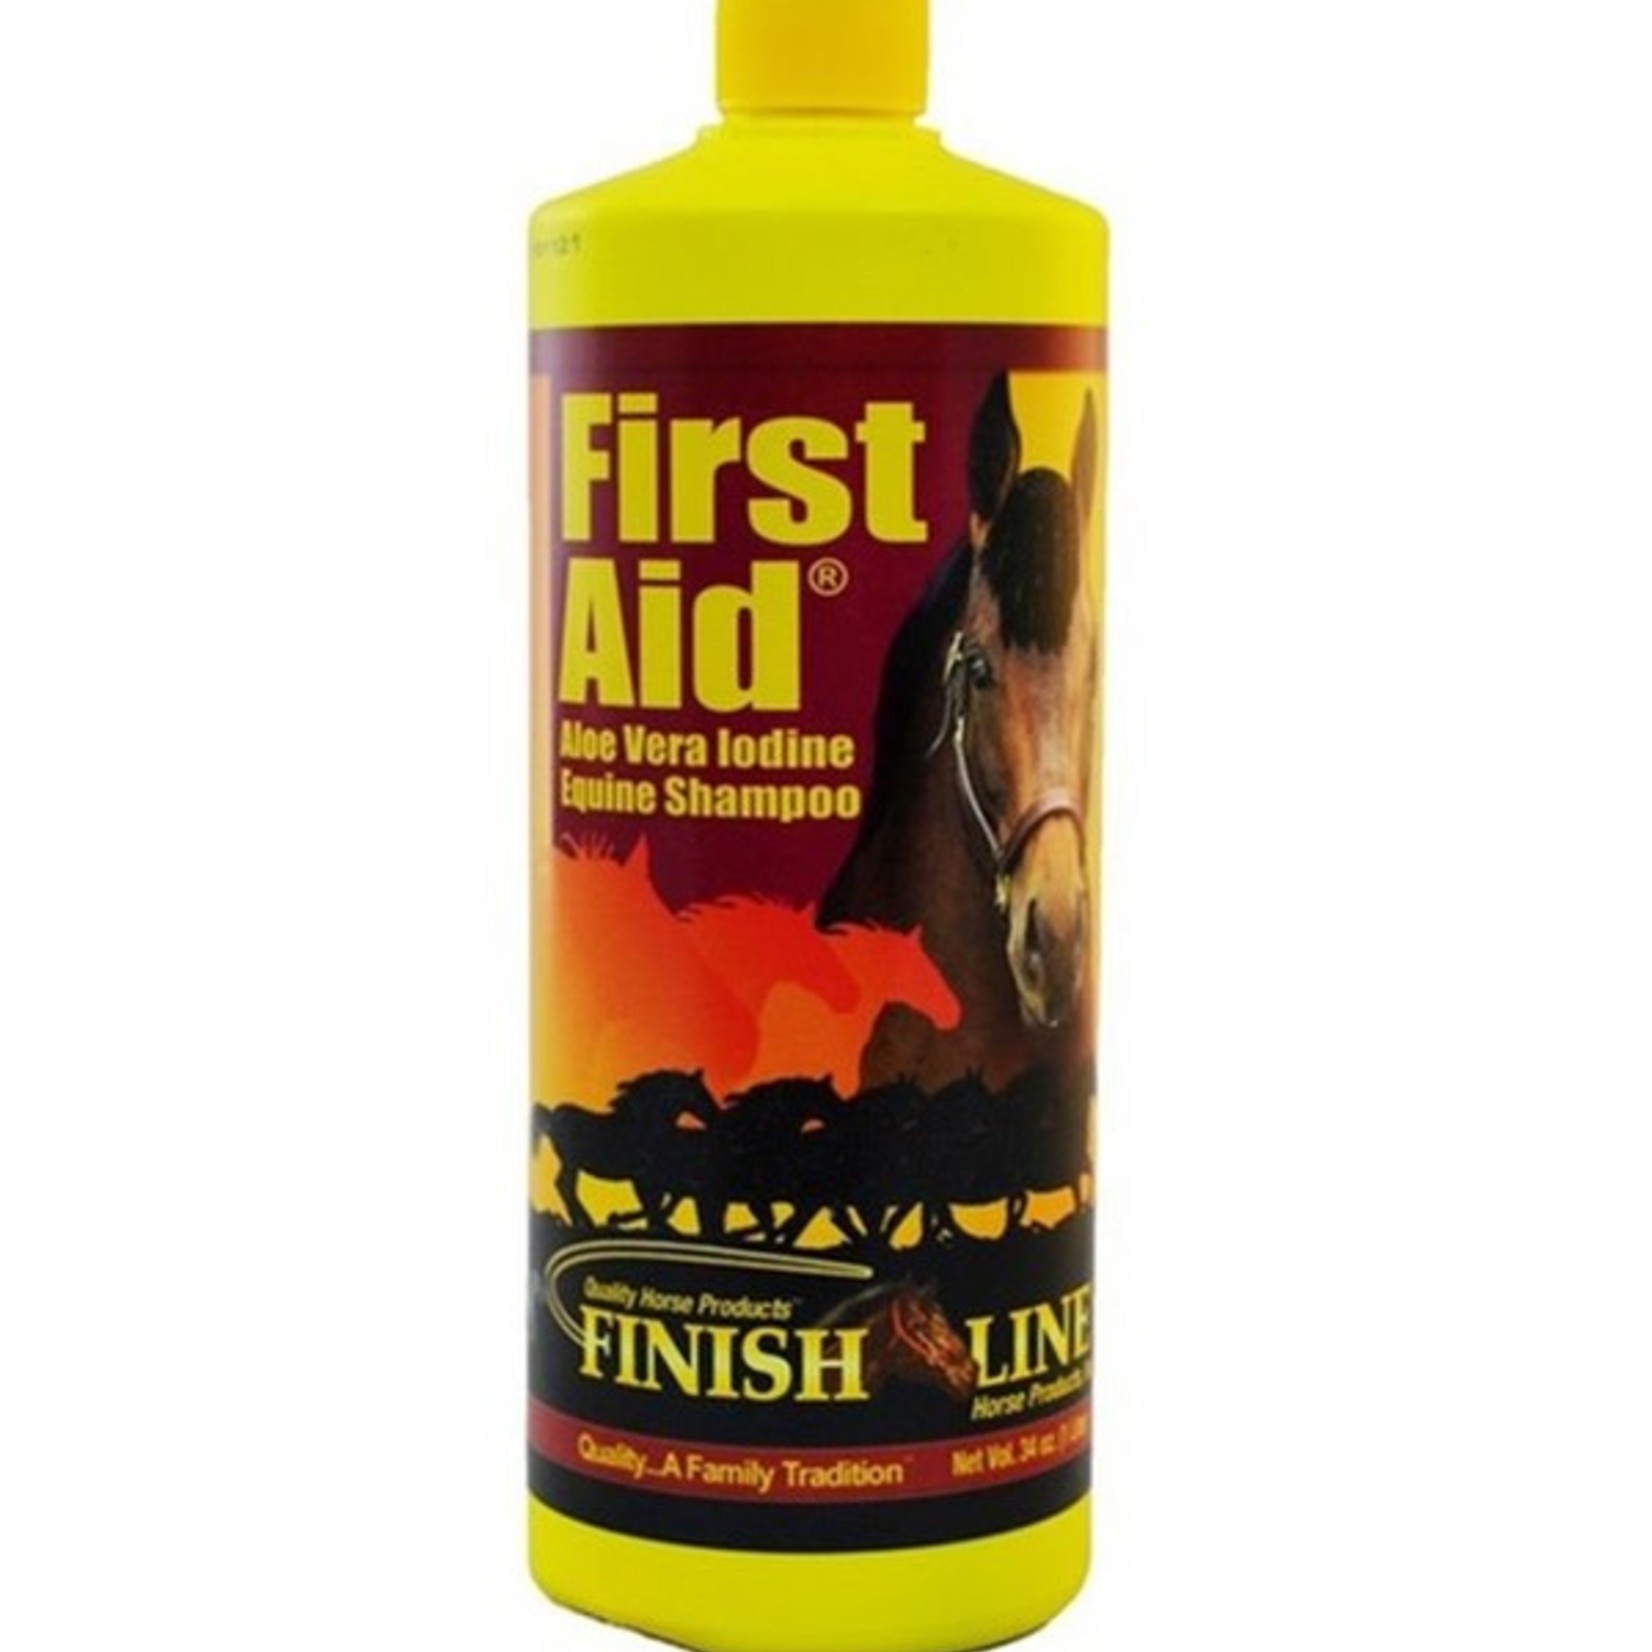 FINISHLINE Finish Line 1st Aid Shampoo